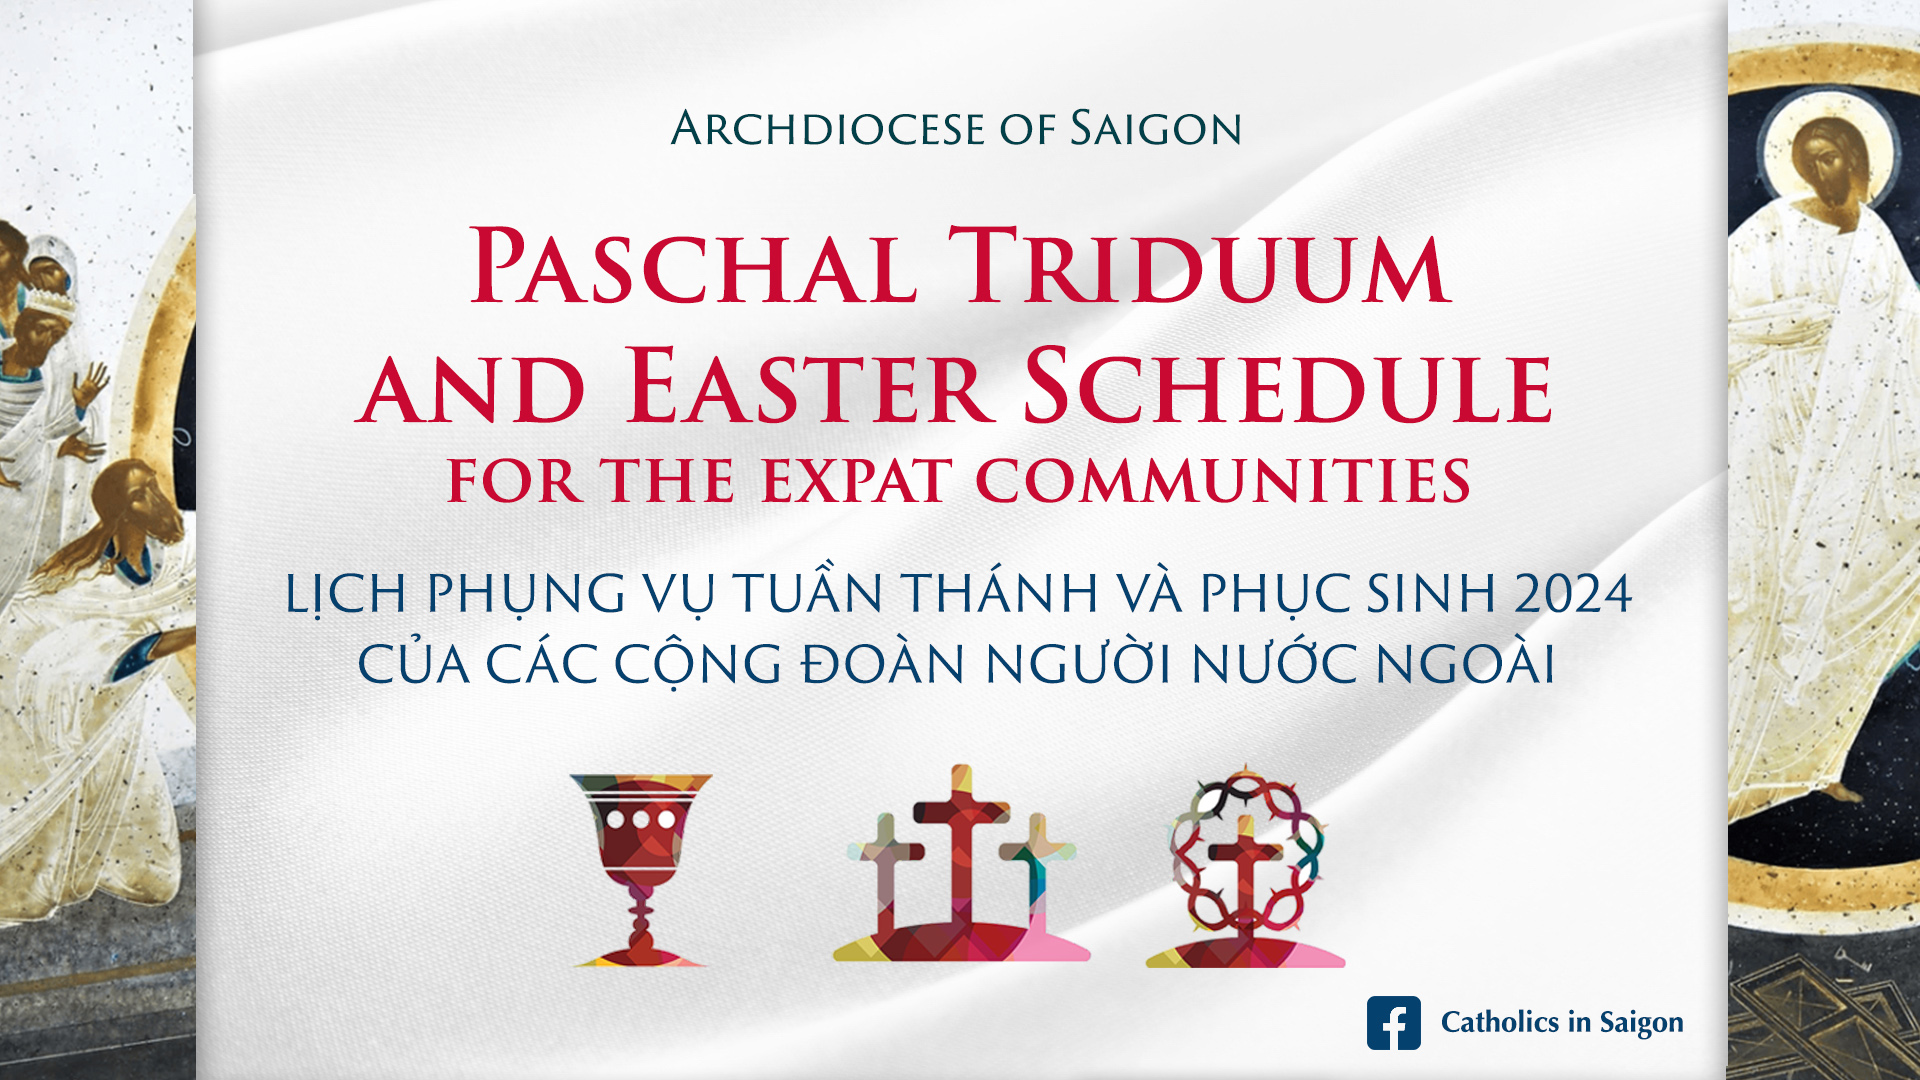 Lịch Phụng vụ Tuần Thánh và Phục sinh 2024 của các cộng đoàn nước ngoài | Paschal Triduum and Easter Schedule for the Expat Communities